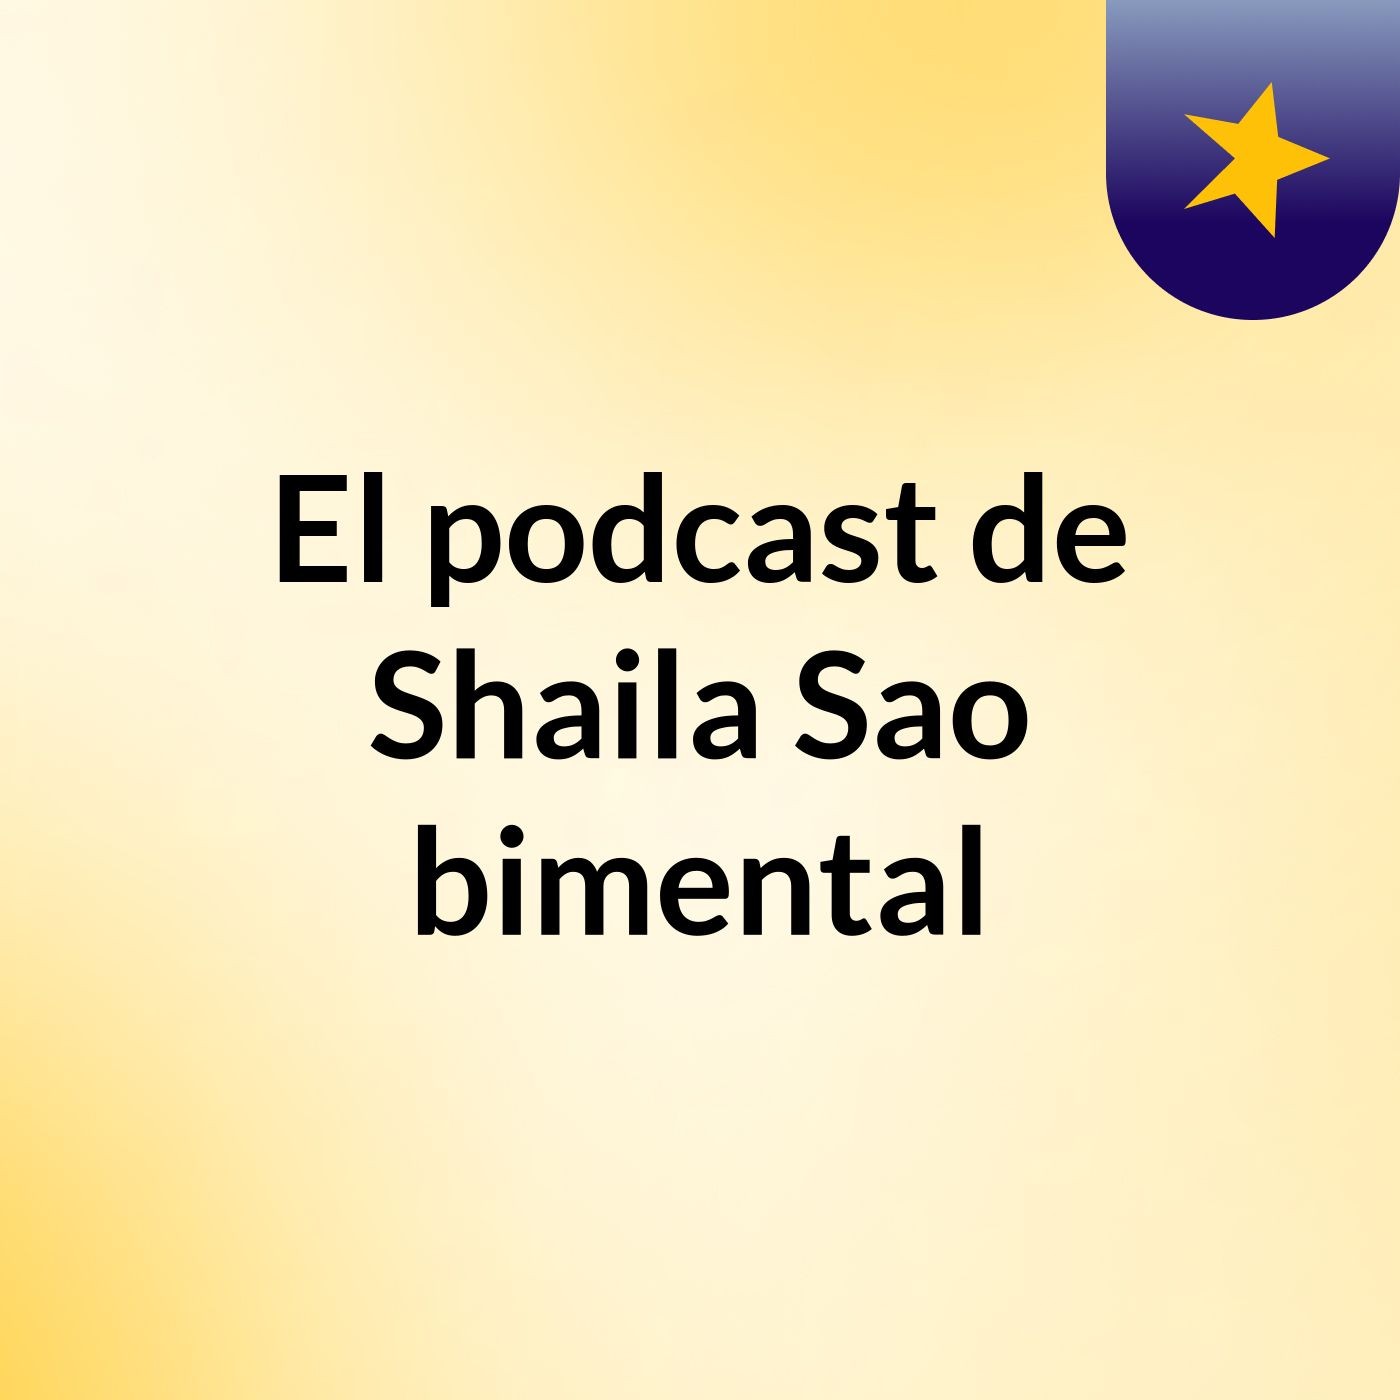 El podcast de Shaila Sao bimental